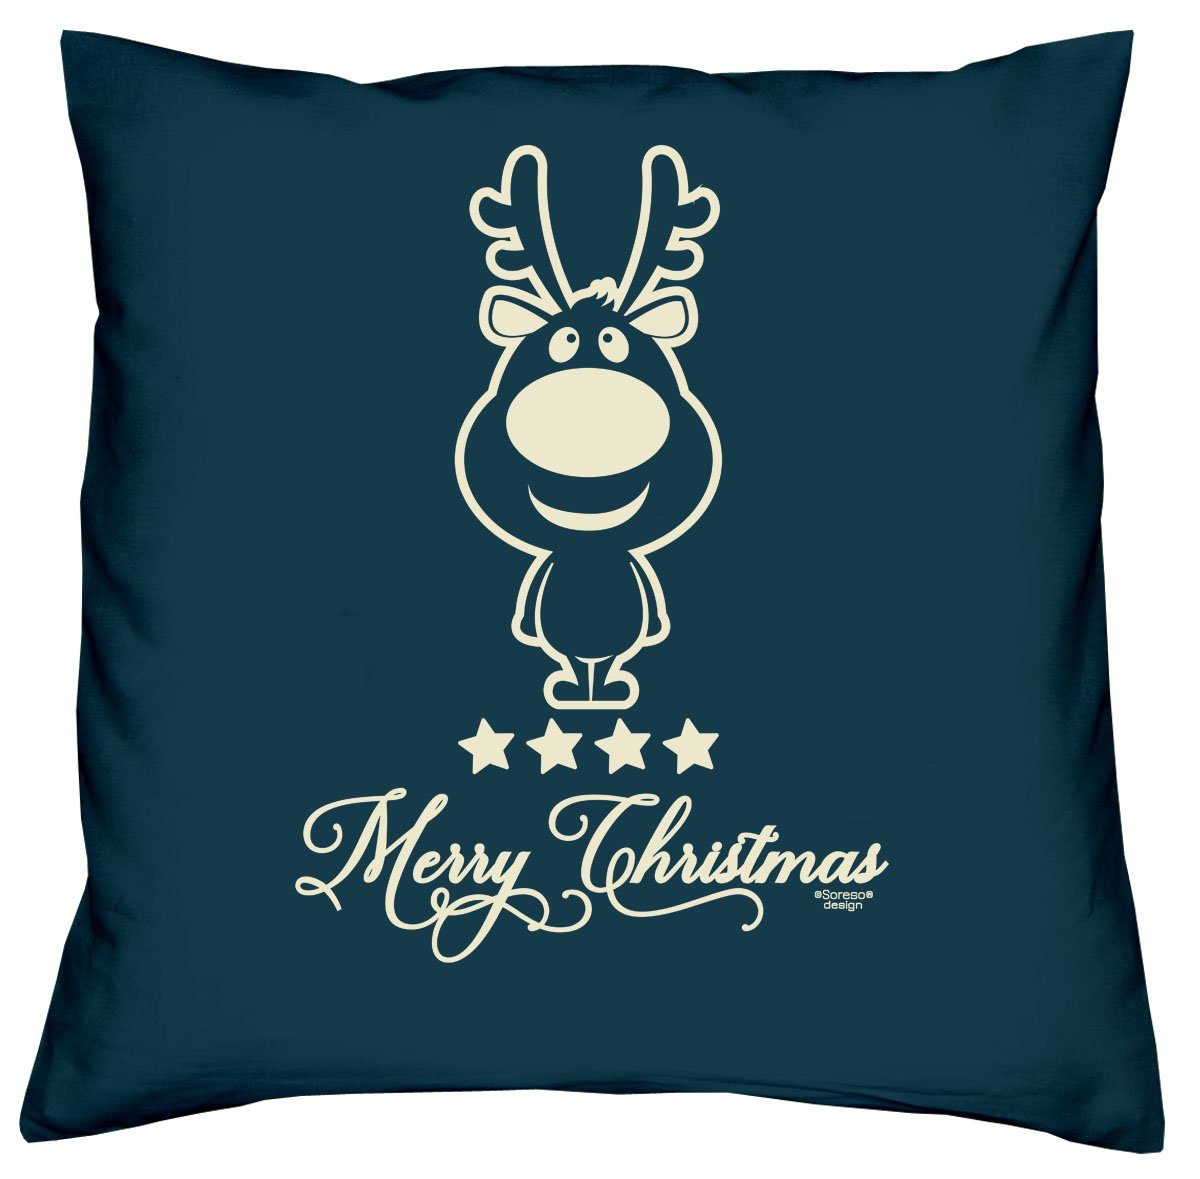 Soreso® Dekokissen Kissen Christmas Kissenbezug und Füllung, Weihnachtsgeschenk navy-blau